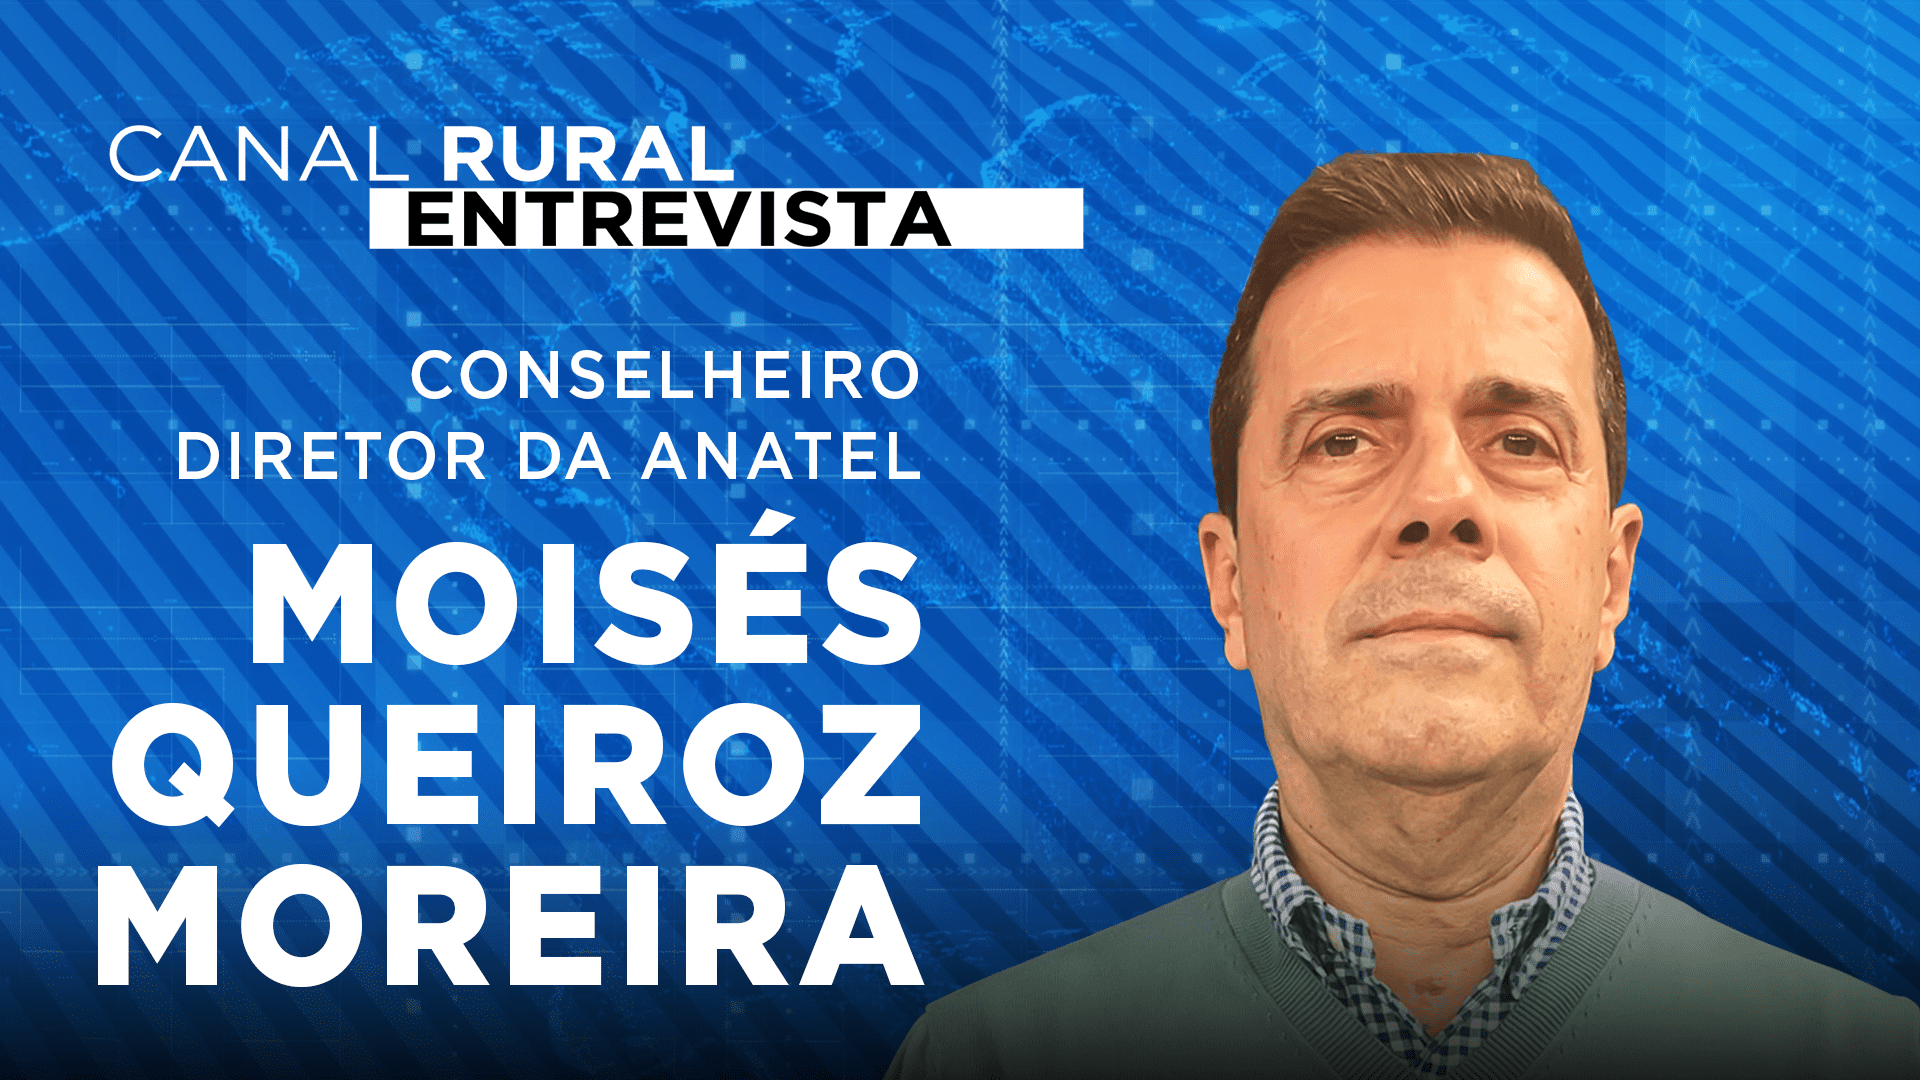 Canal Rural Entrevista Moisés Queiroz Moreira